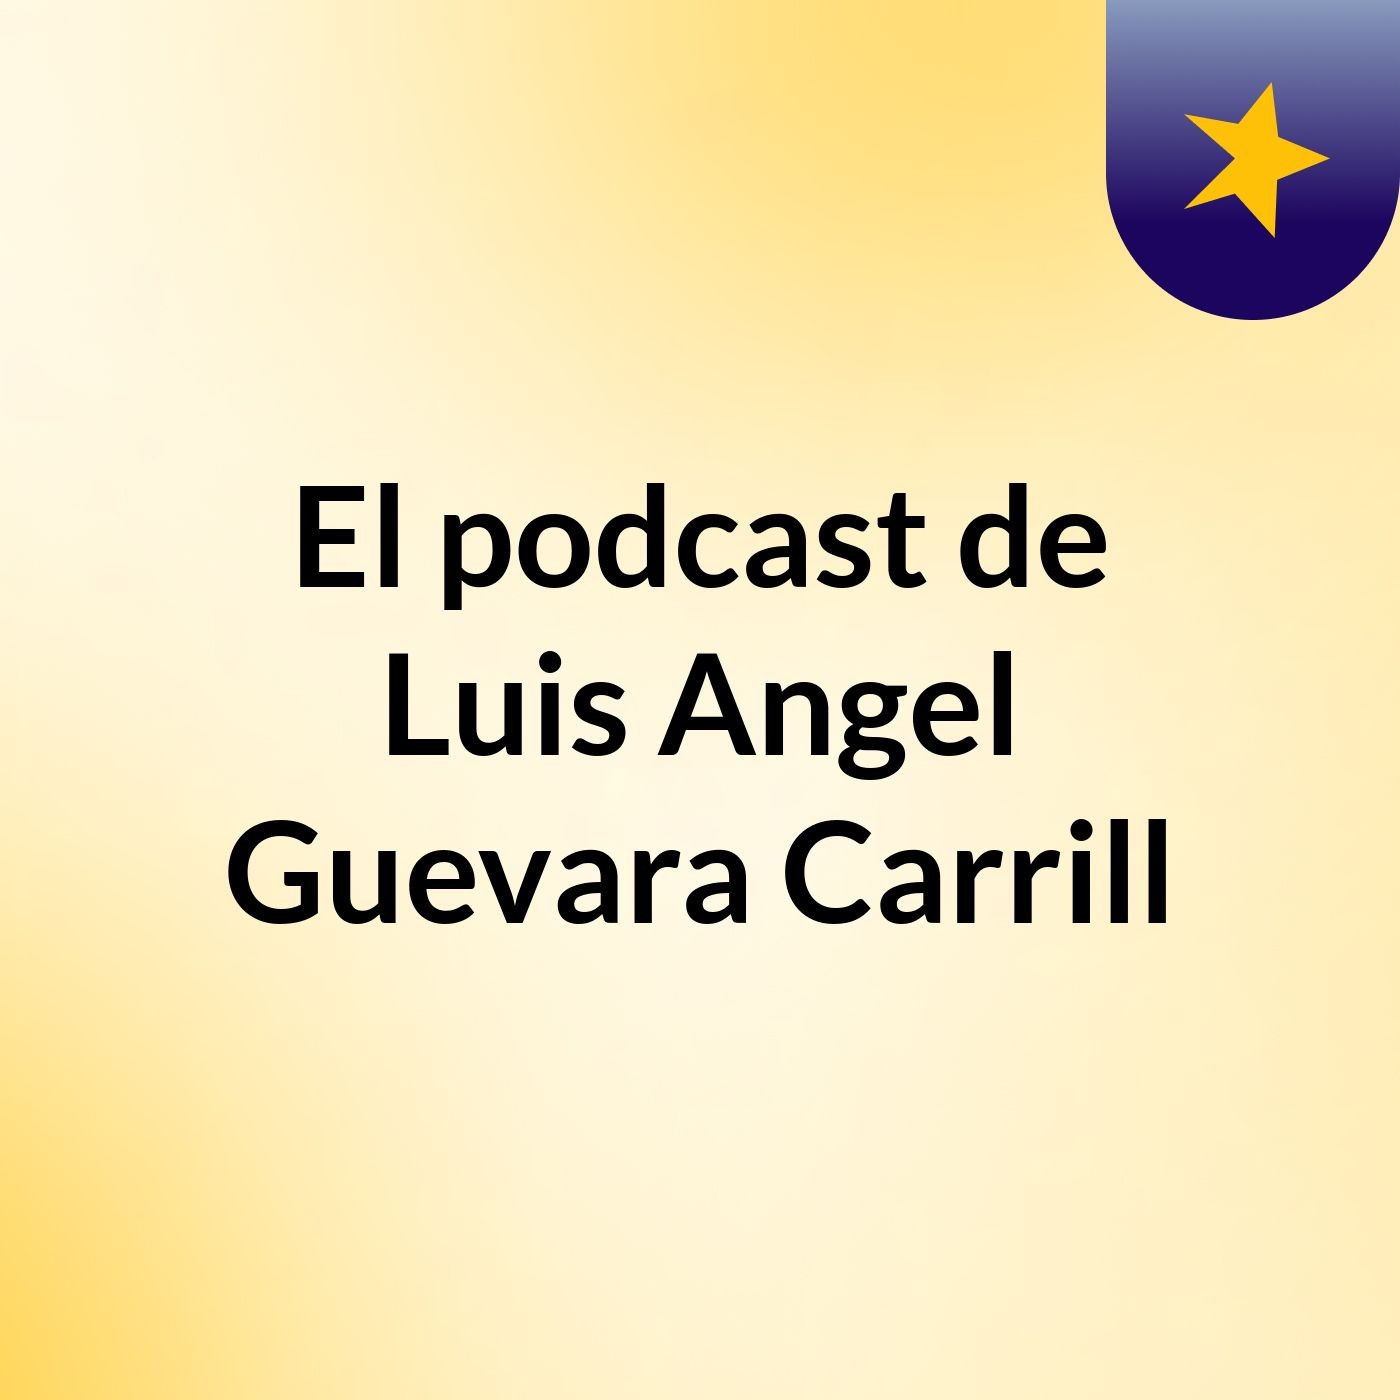 El podcast de Luis Angel Guevara Carrill